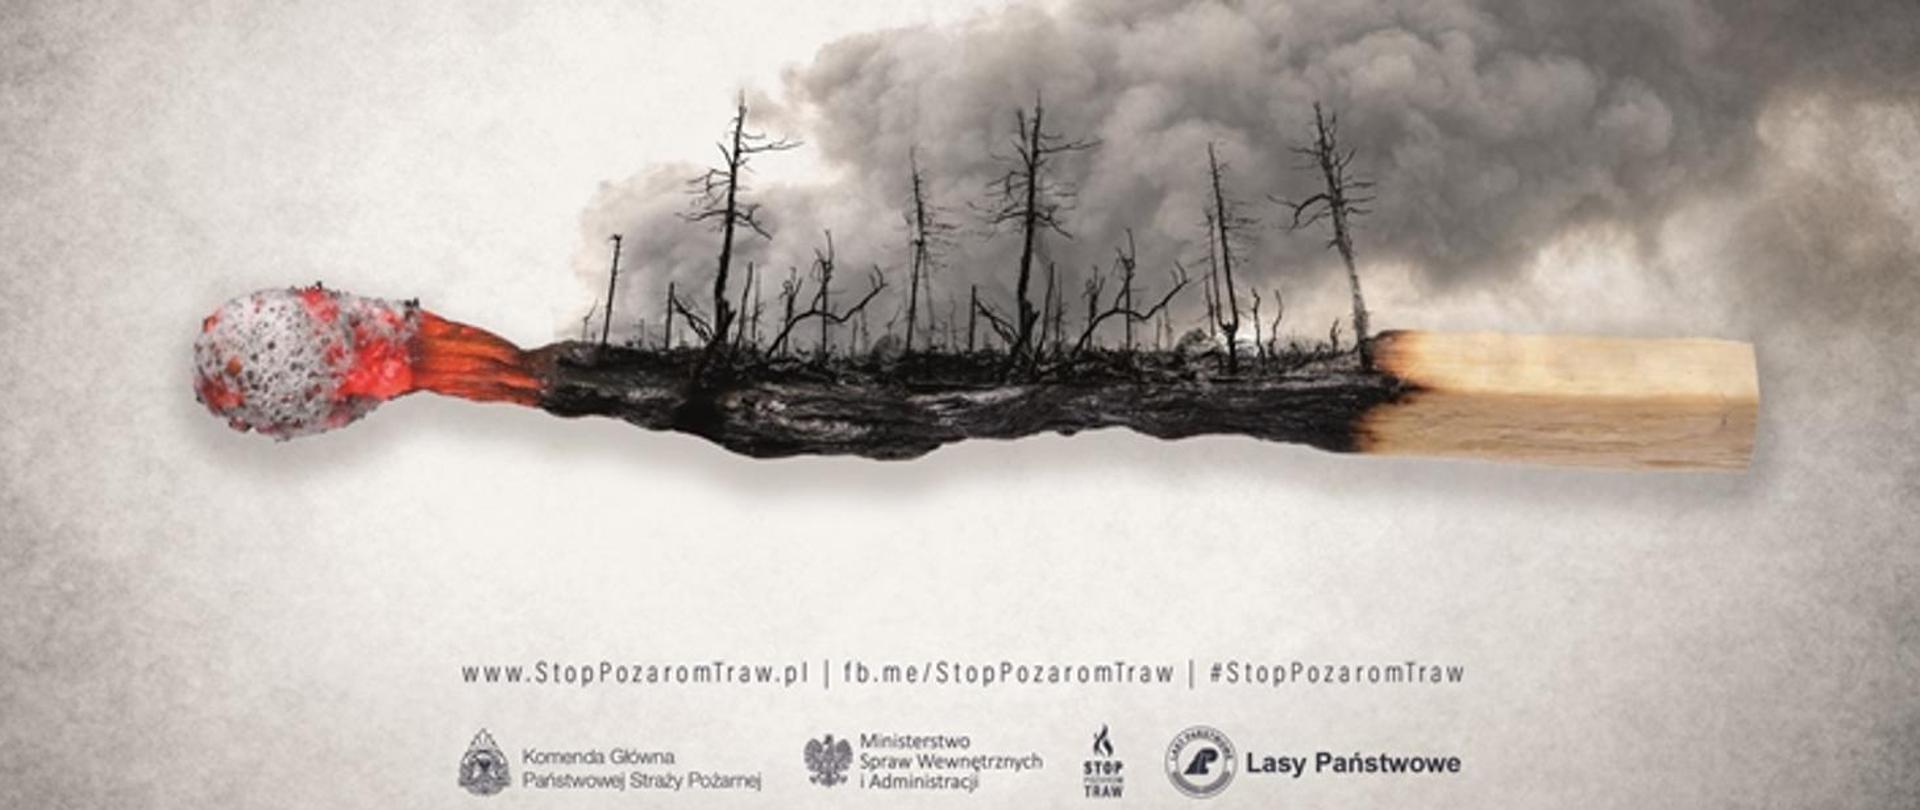 Zdjęcie przedstawia spaloną zapałkę i spalony las